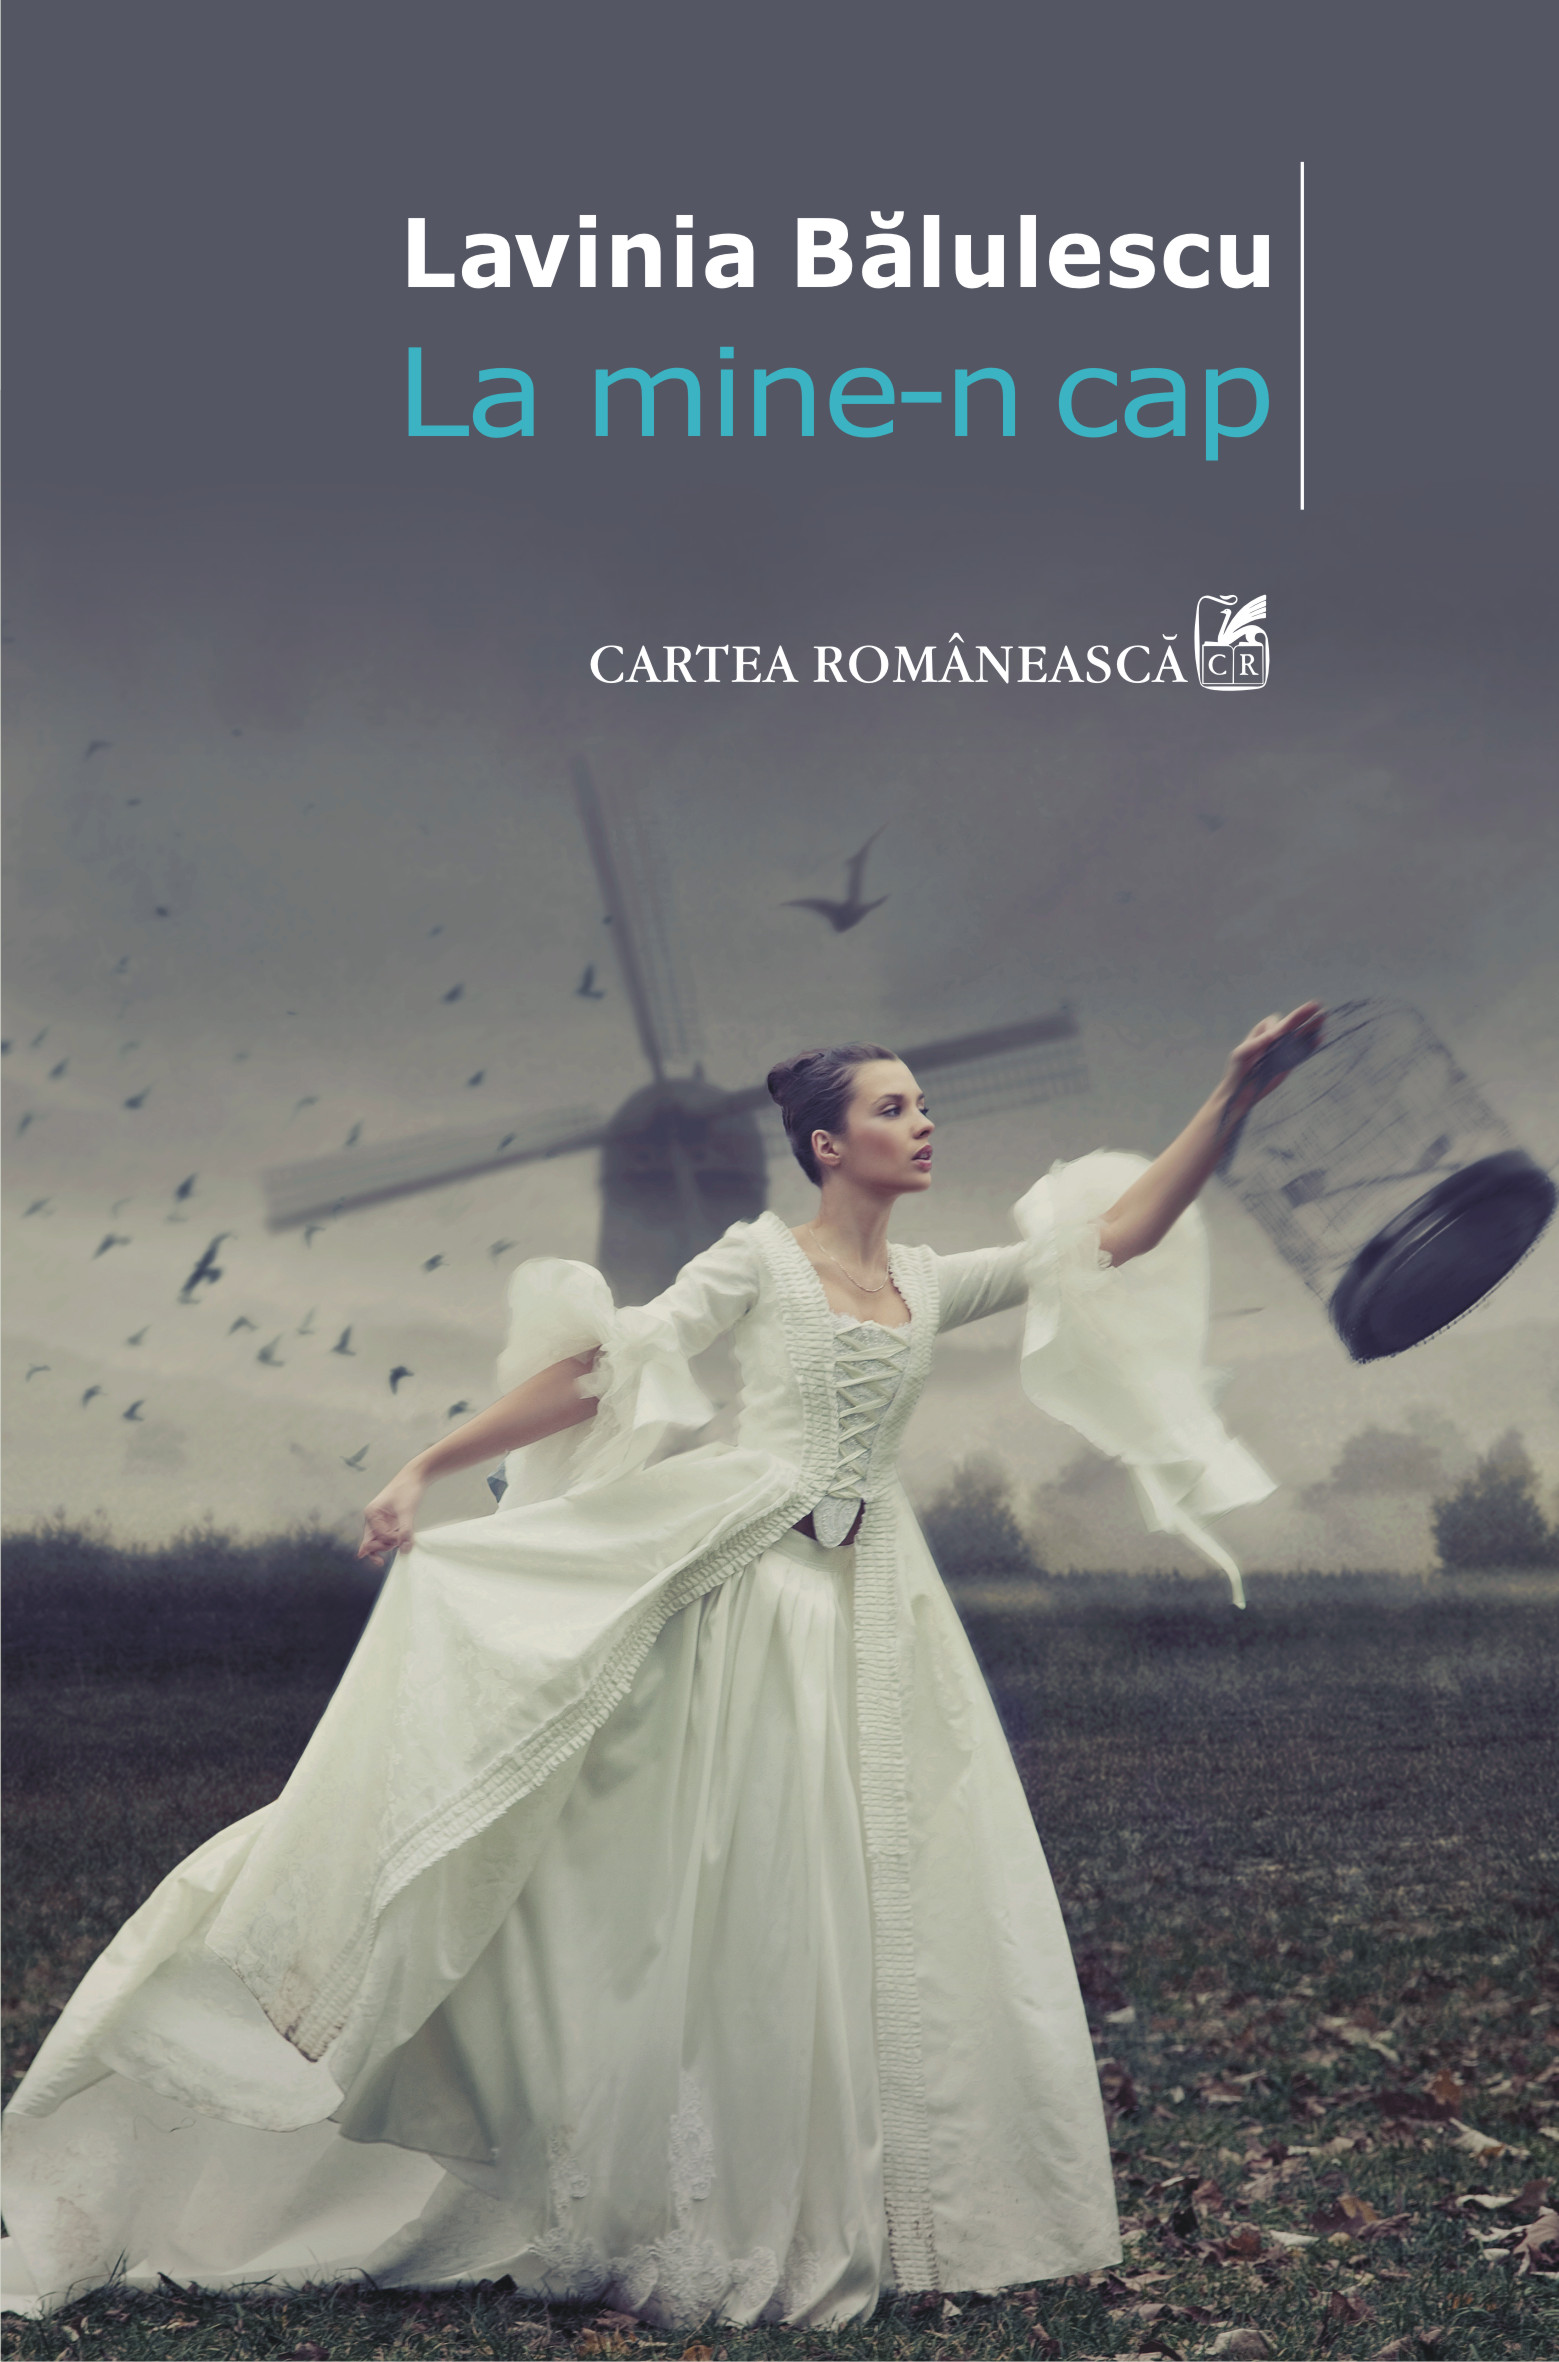 eBook La mine-n cap - Lavinia Balulescu